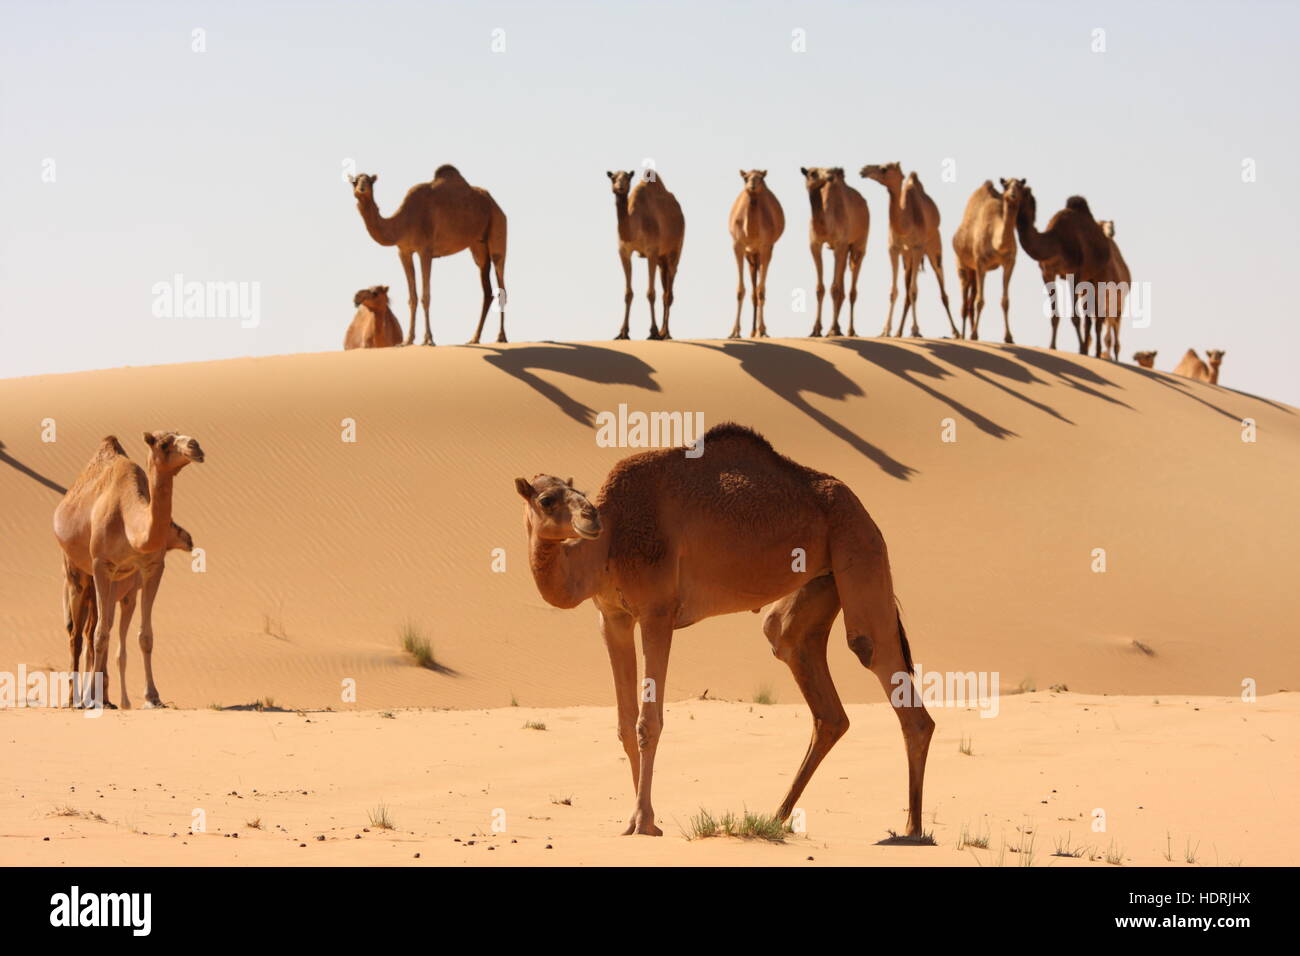 Kamele in der Wüste Abu Dhabi Emirate, Vereinigte Arabische Emirate. Stockfoto